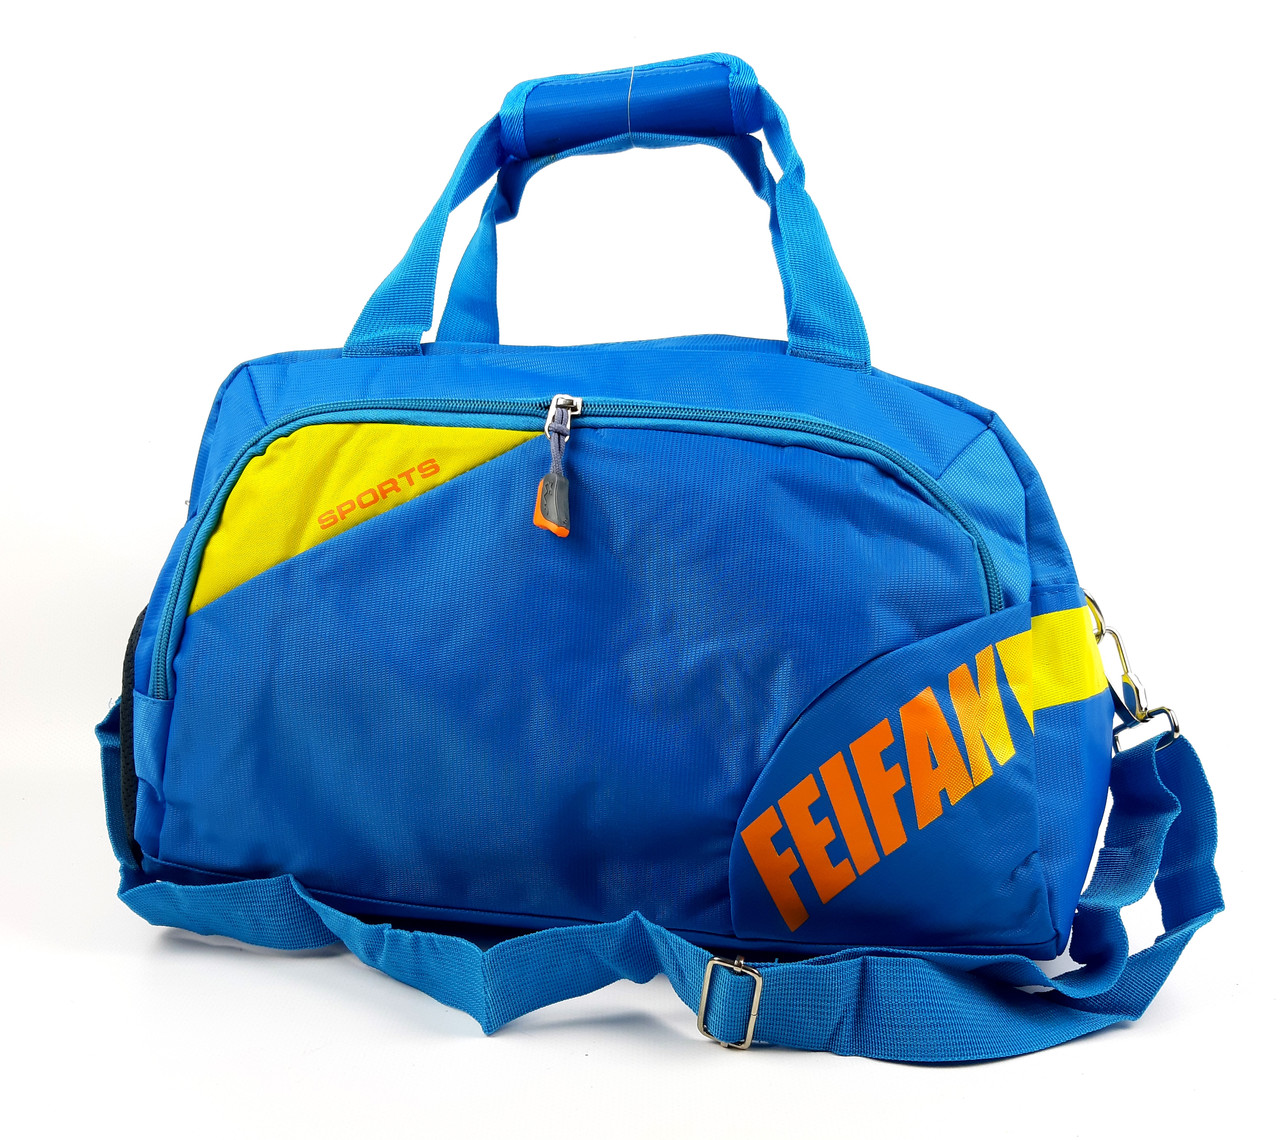 Середня спортивна\дорожна сумка блакитного кольору (18 літрів)